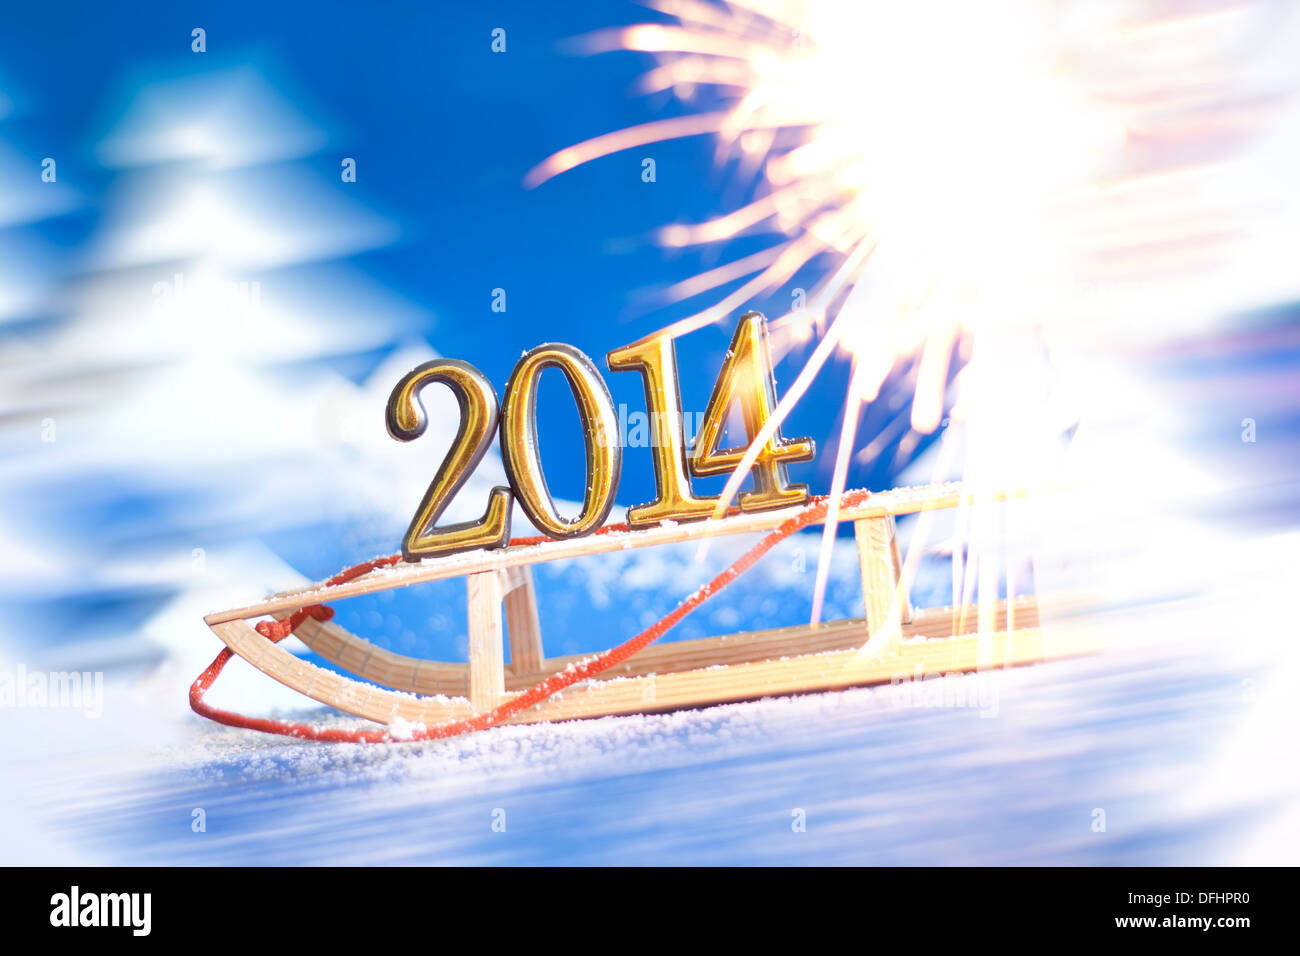 2014 neue Jahr zahlen auf Schlitten abstrakt auf Schnee Hintergrund Stockfoto